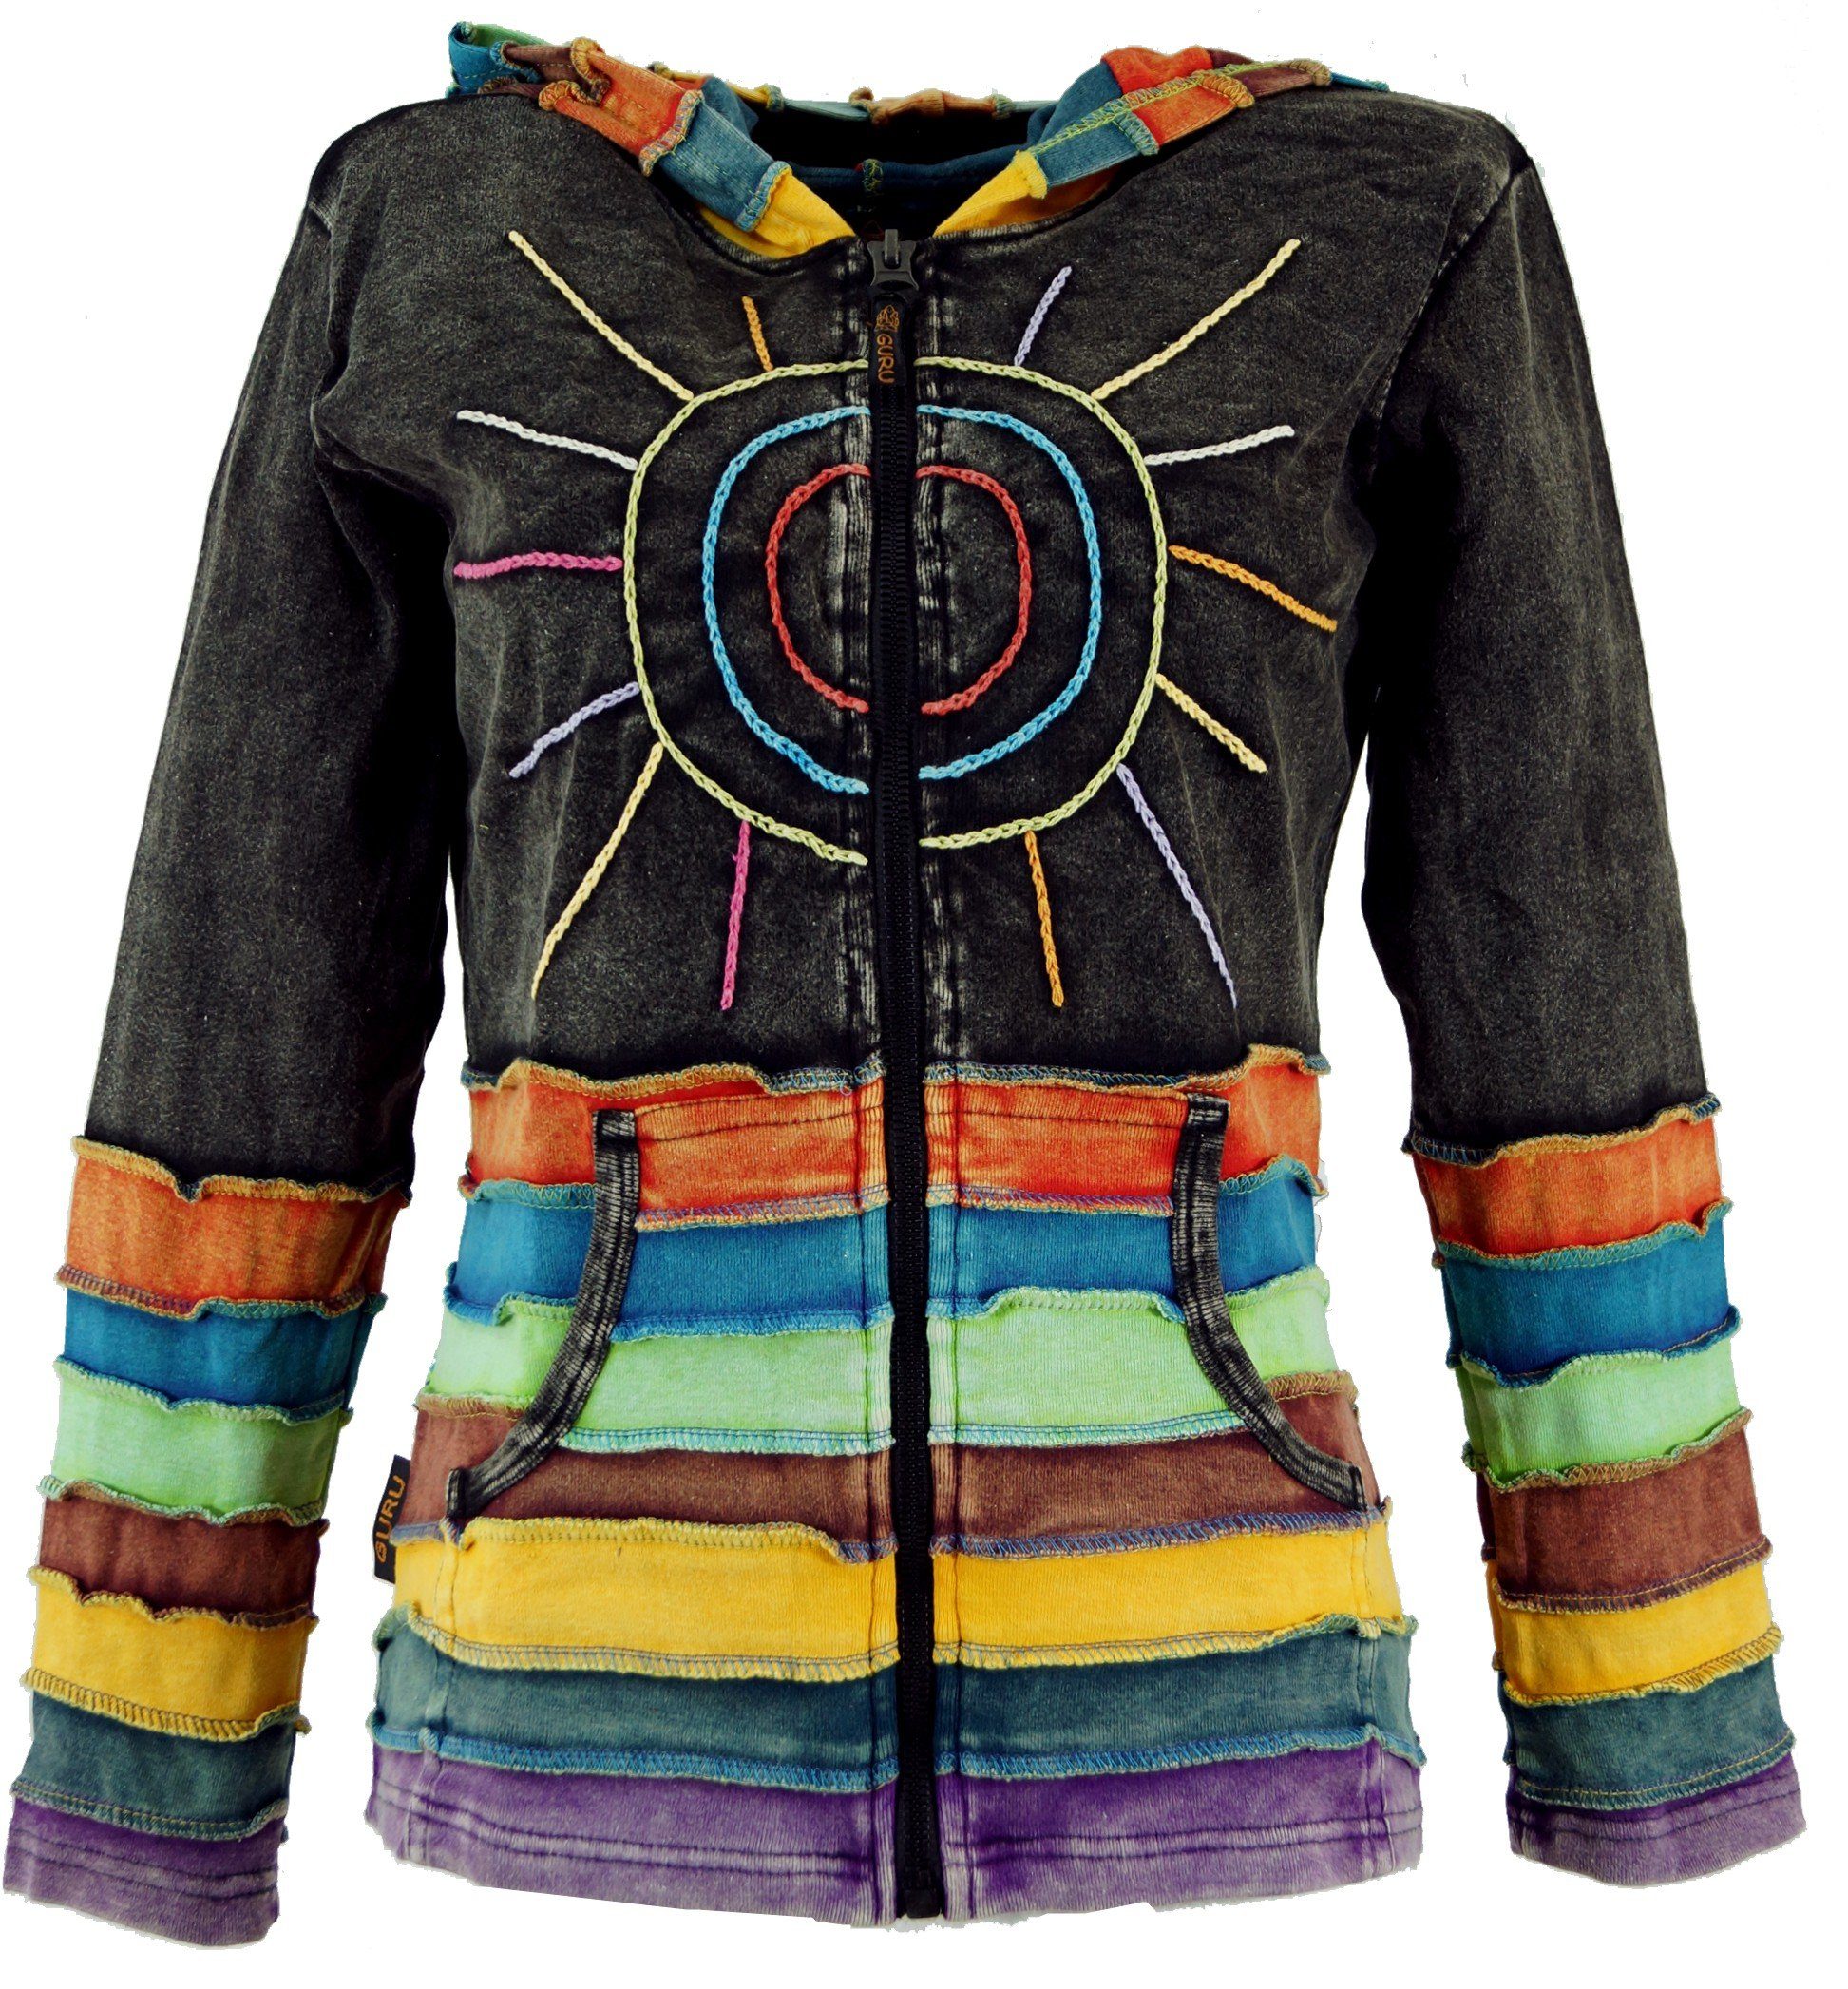 Guru-Shop Langjacke Regenbogenjacke, Jacke mit Zipfelkapuze - schwarz alternative Bekleidung